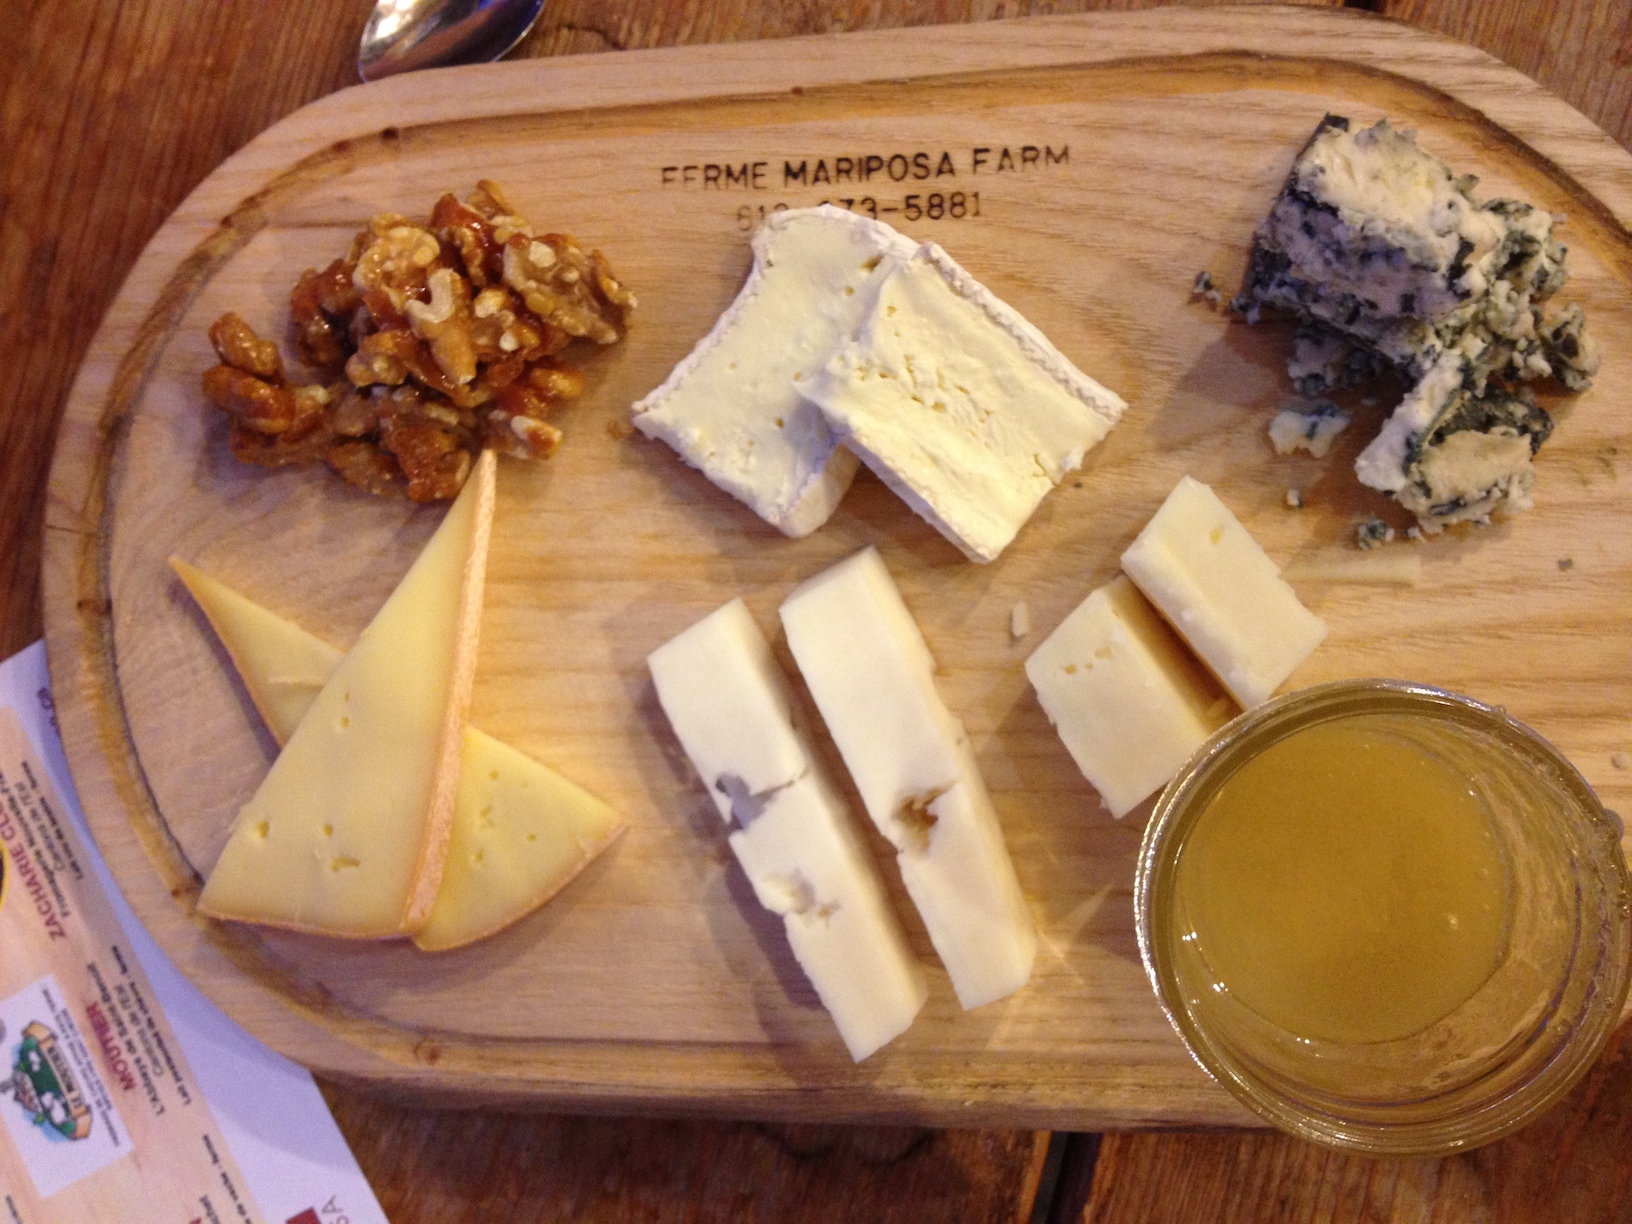  Quebec cheese course: Riopelle, Zacharie Cloutier, Bleu d’Elisabeth, Moutier, Baluchon. 